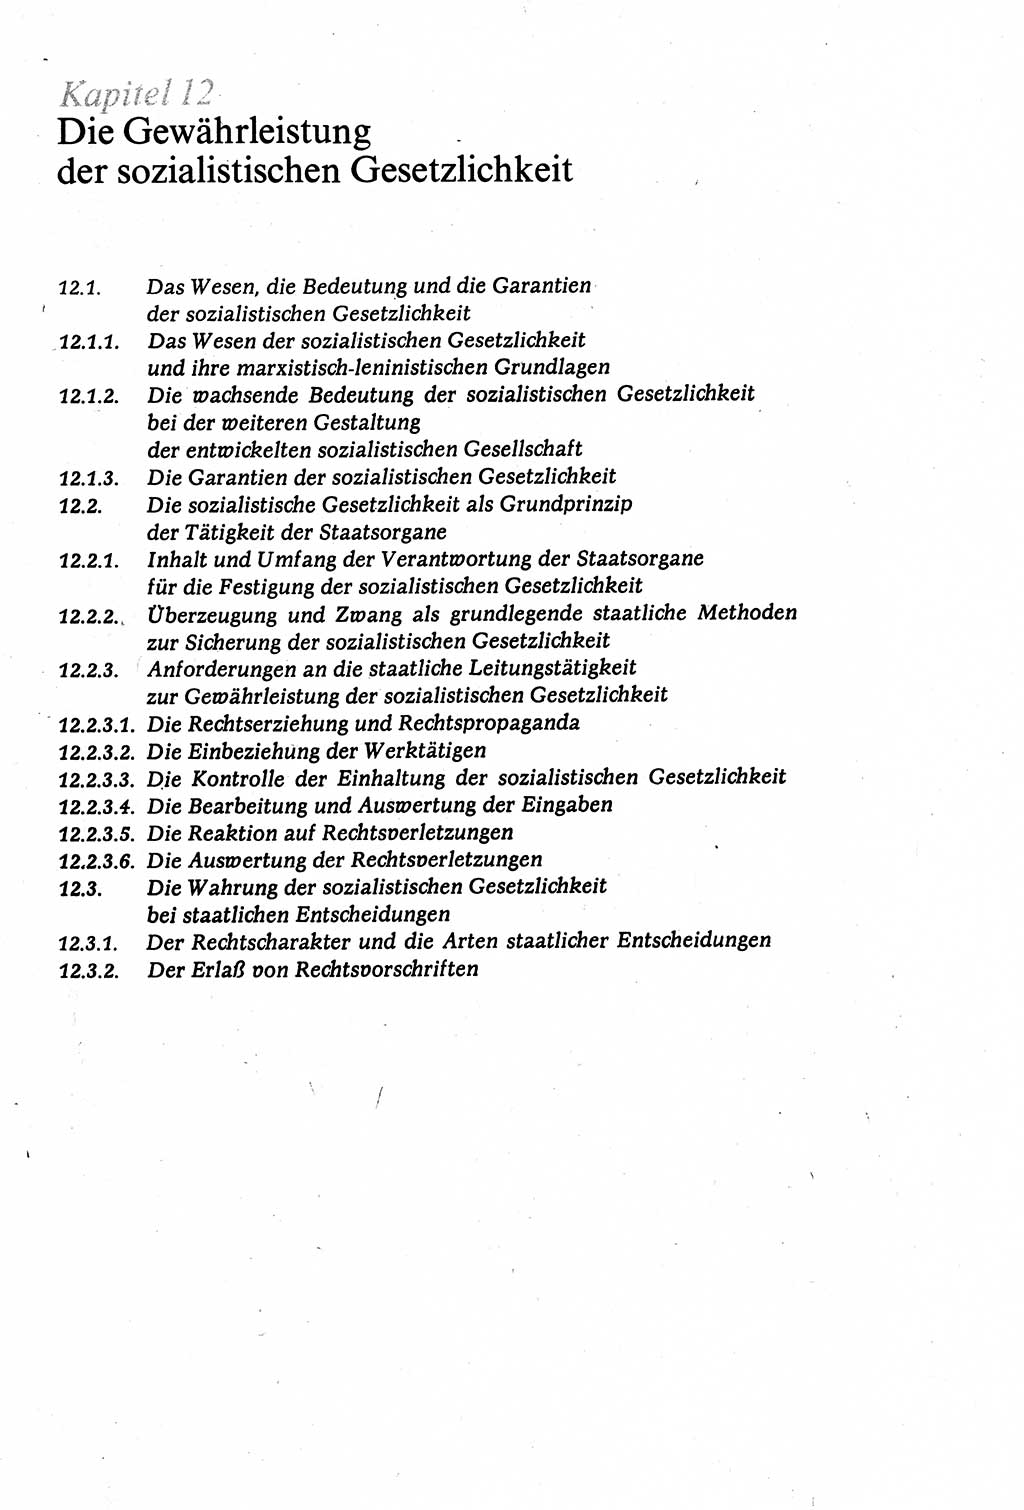 Staatsrecht der DDR (Deutsche Demokratische Republik), Lehrbuch 1977, Seite 457 (St.-R. DDR Lb. 1977, S. 457)